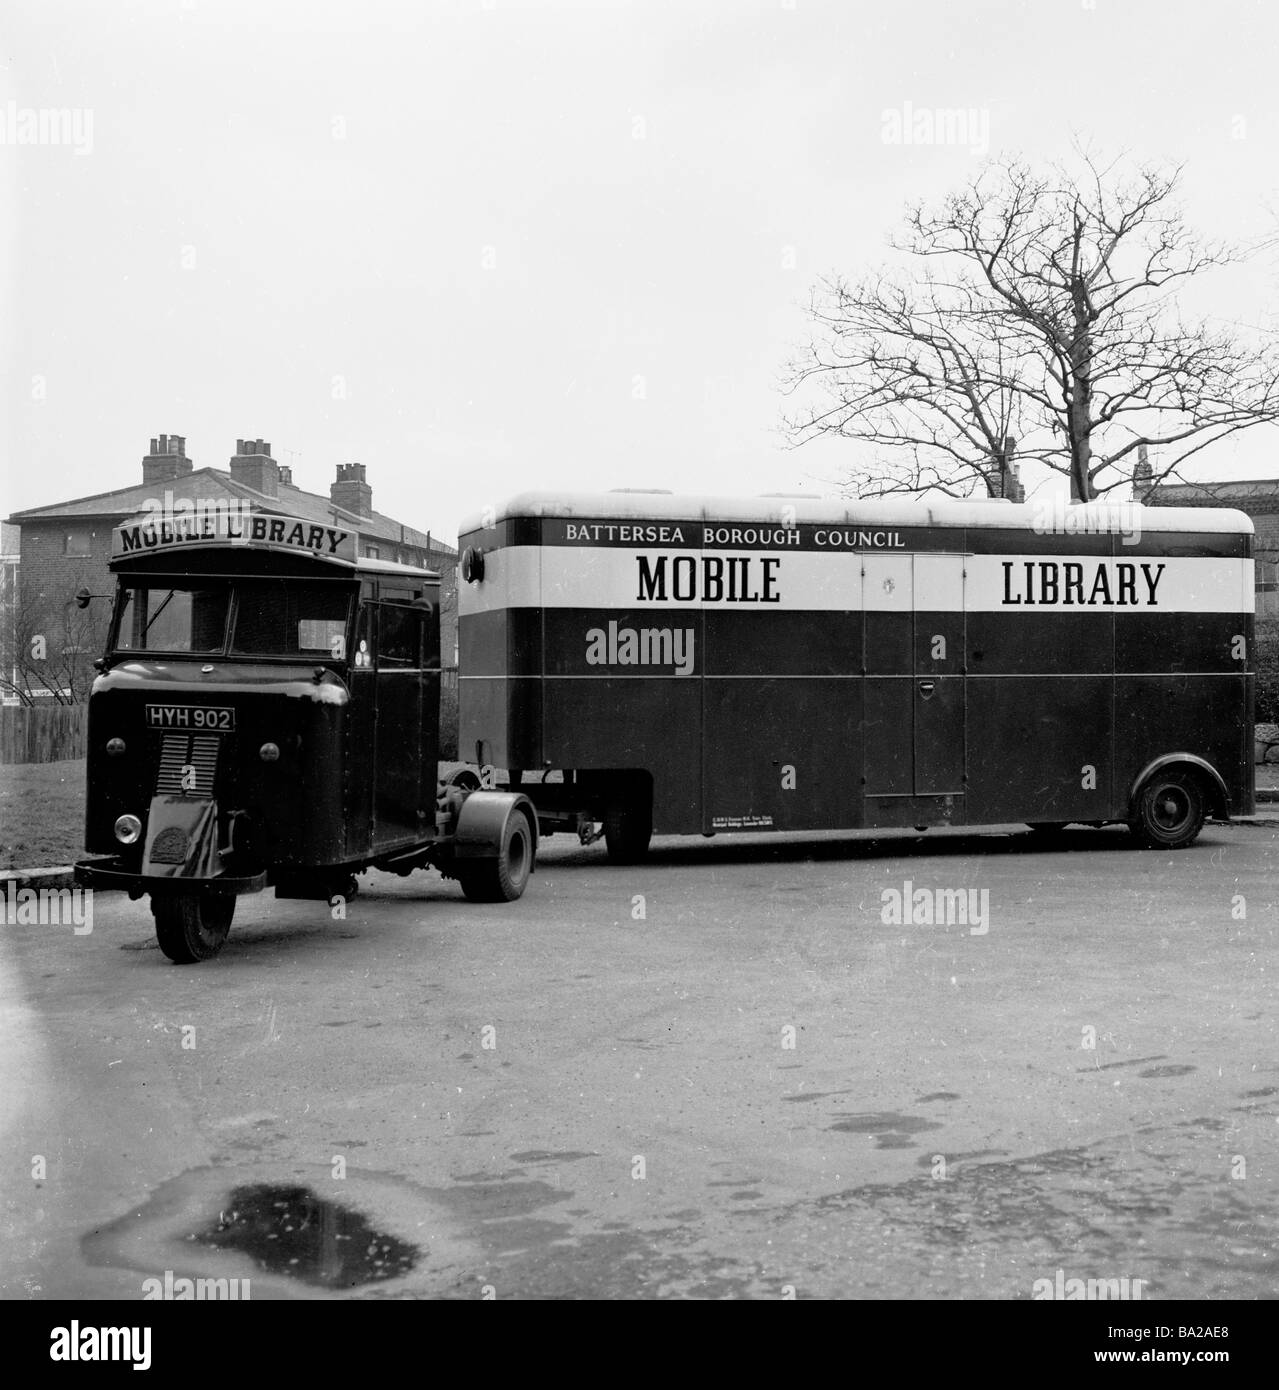 1950s, storica, una biblioteca mobile, collegata ad un veicolo a motore a tre ruote, parcheggiata all'esterno di una proprietà immobiliare, Battersea, Londra del Sud, Inghilterra, Regno Unito. Foto Stock